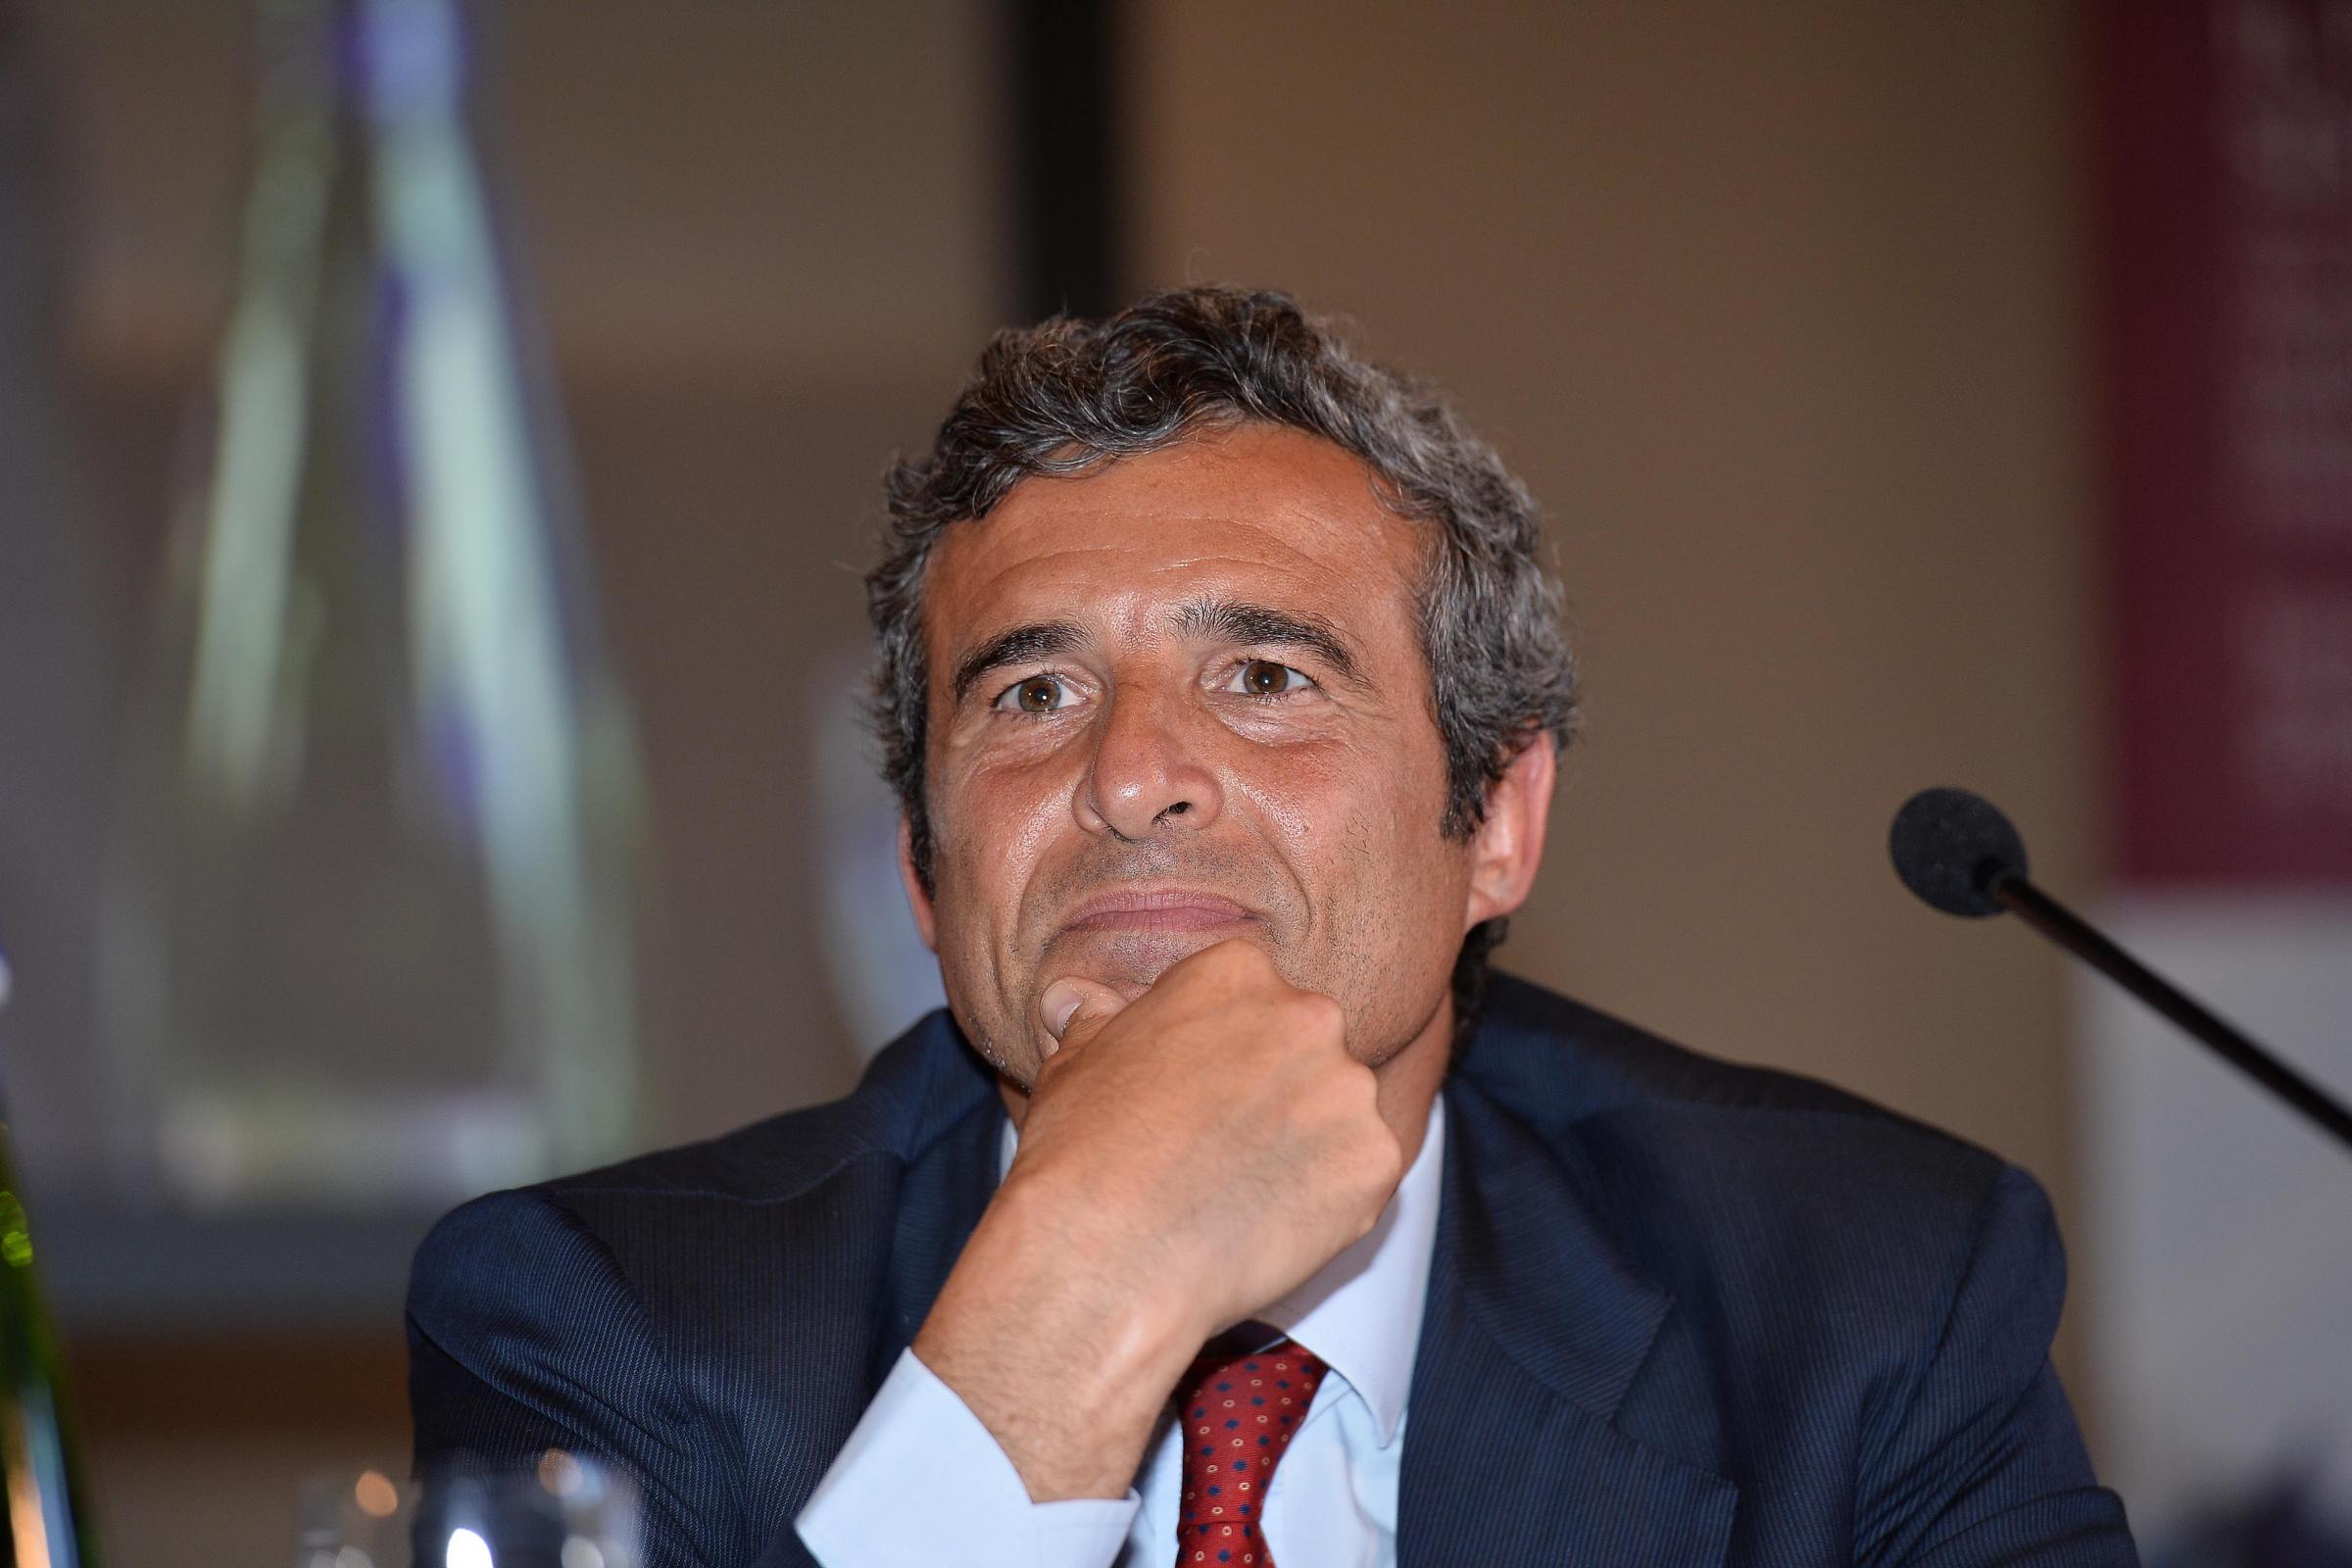 "Grazie alla sua consolidata esperienza, Riccardo Maria Monti, Consigliere esecutivo di Triboo, porta un significativo contributo nel percorso di crescita del gruppo", dice l'amministratore delegato Giulio Corno